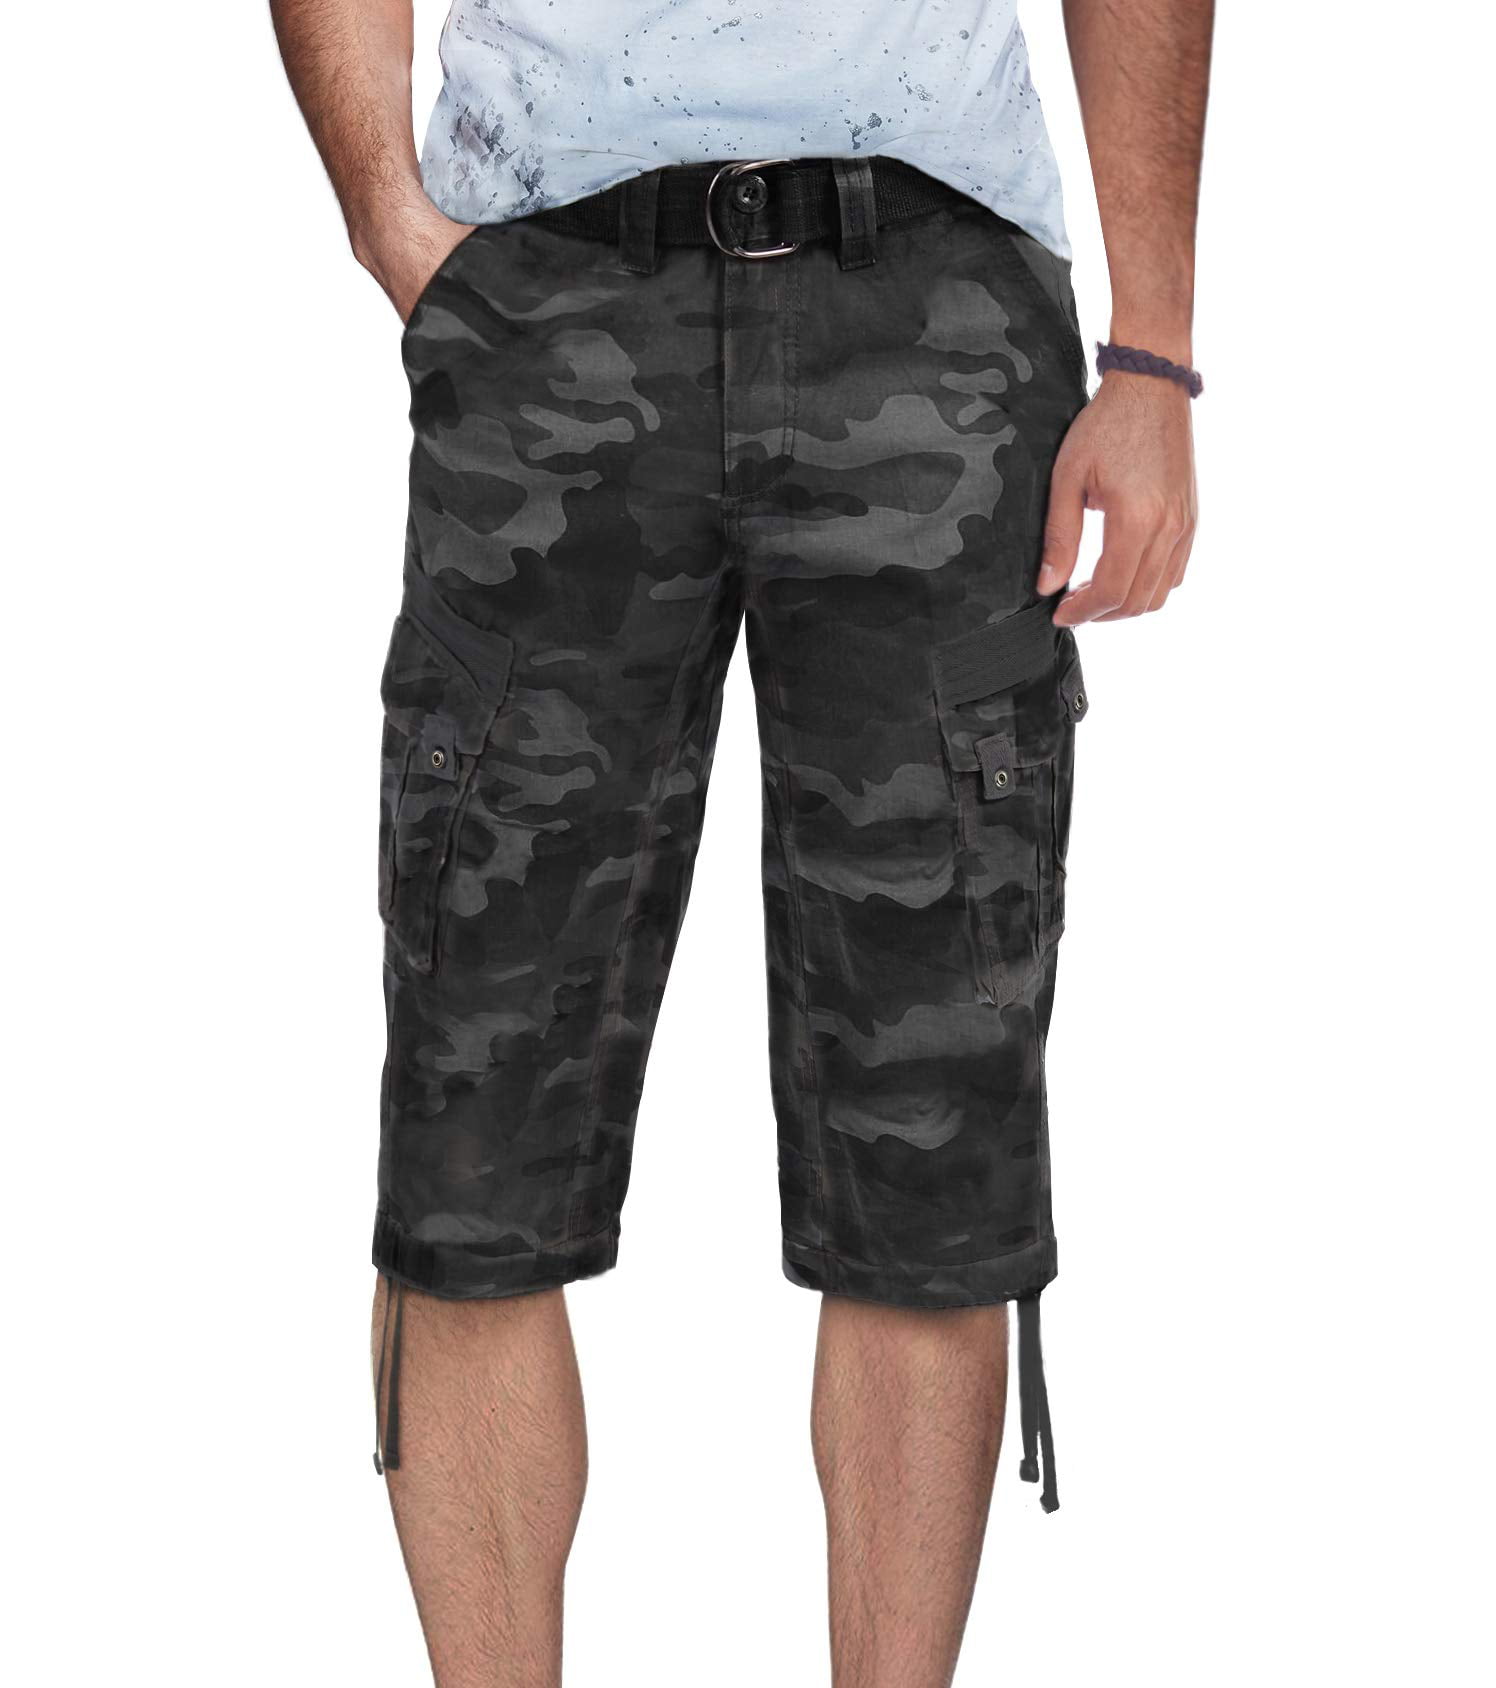 Extra Long Cargo Tactical Shorts Camo BDU Uniform Military Fatigues Below Knee 